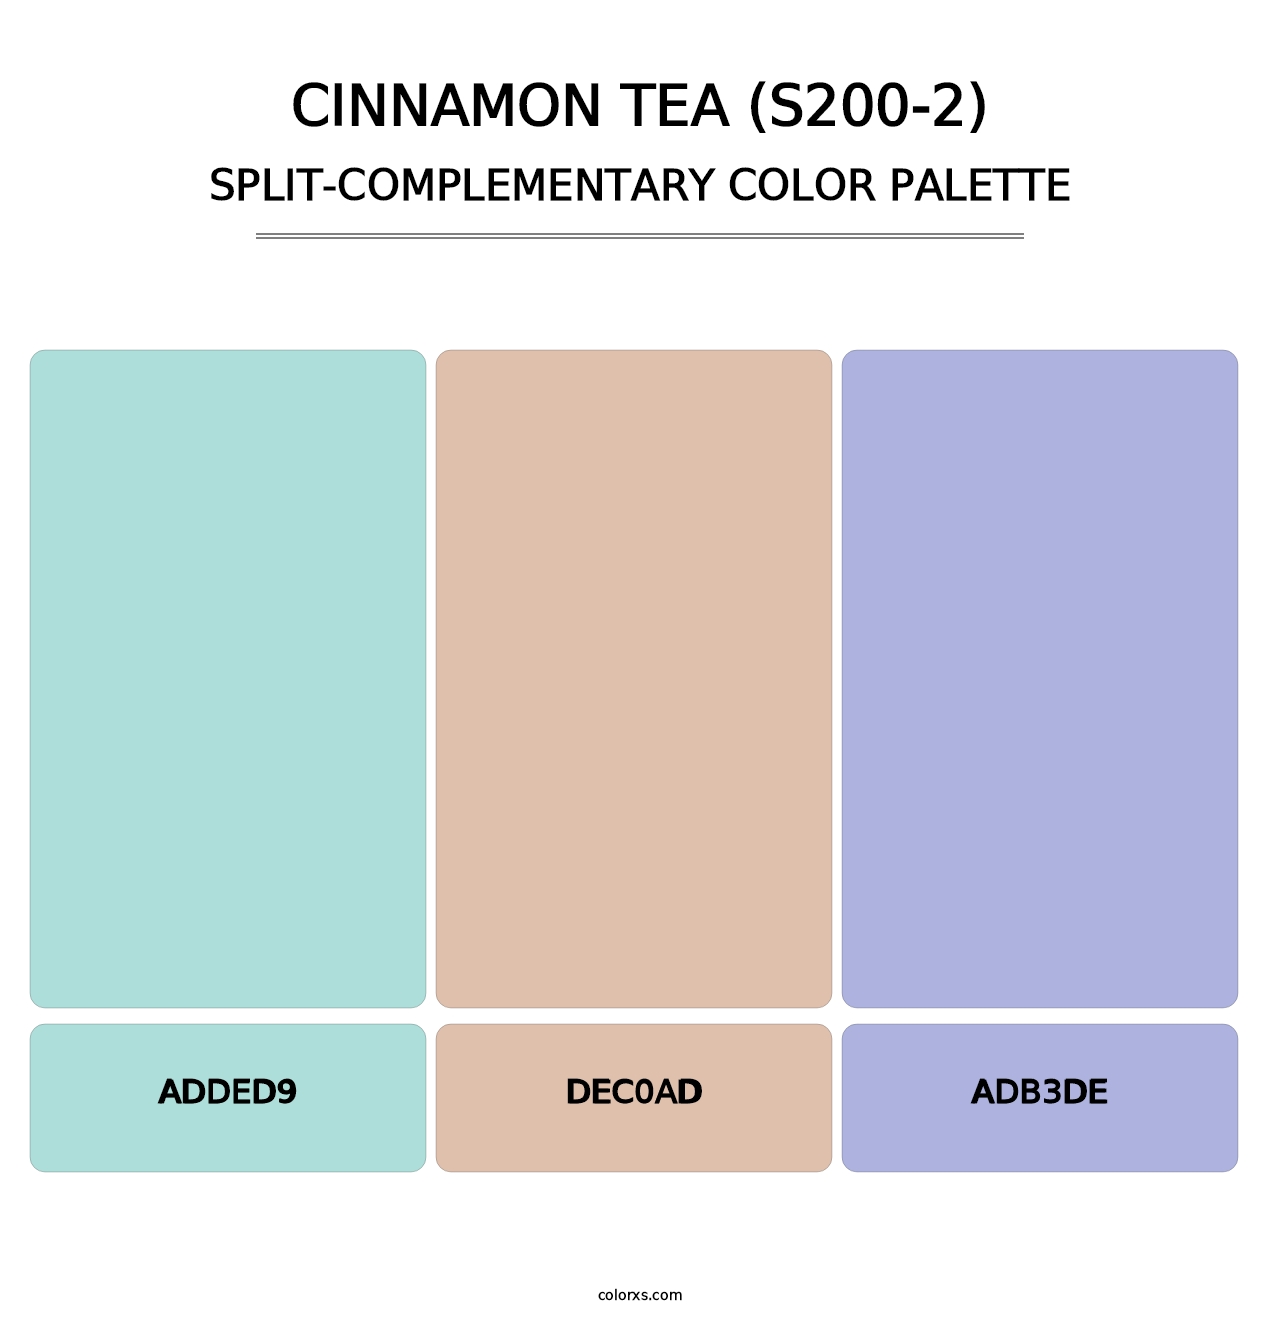 Cinnamon Tea (S200-2) - Split-Complementary Color Palette